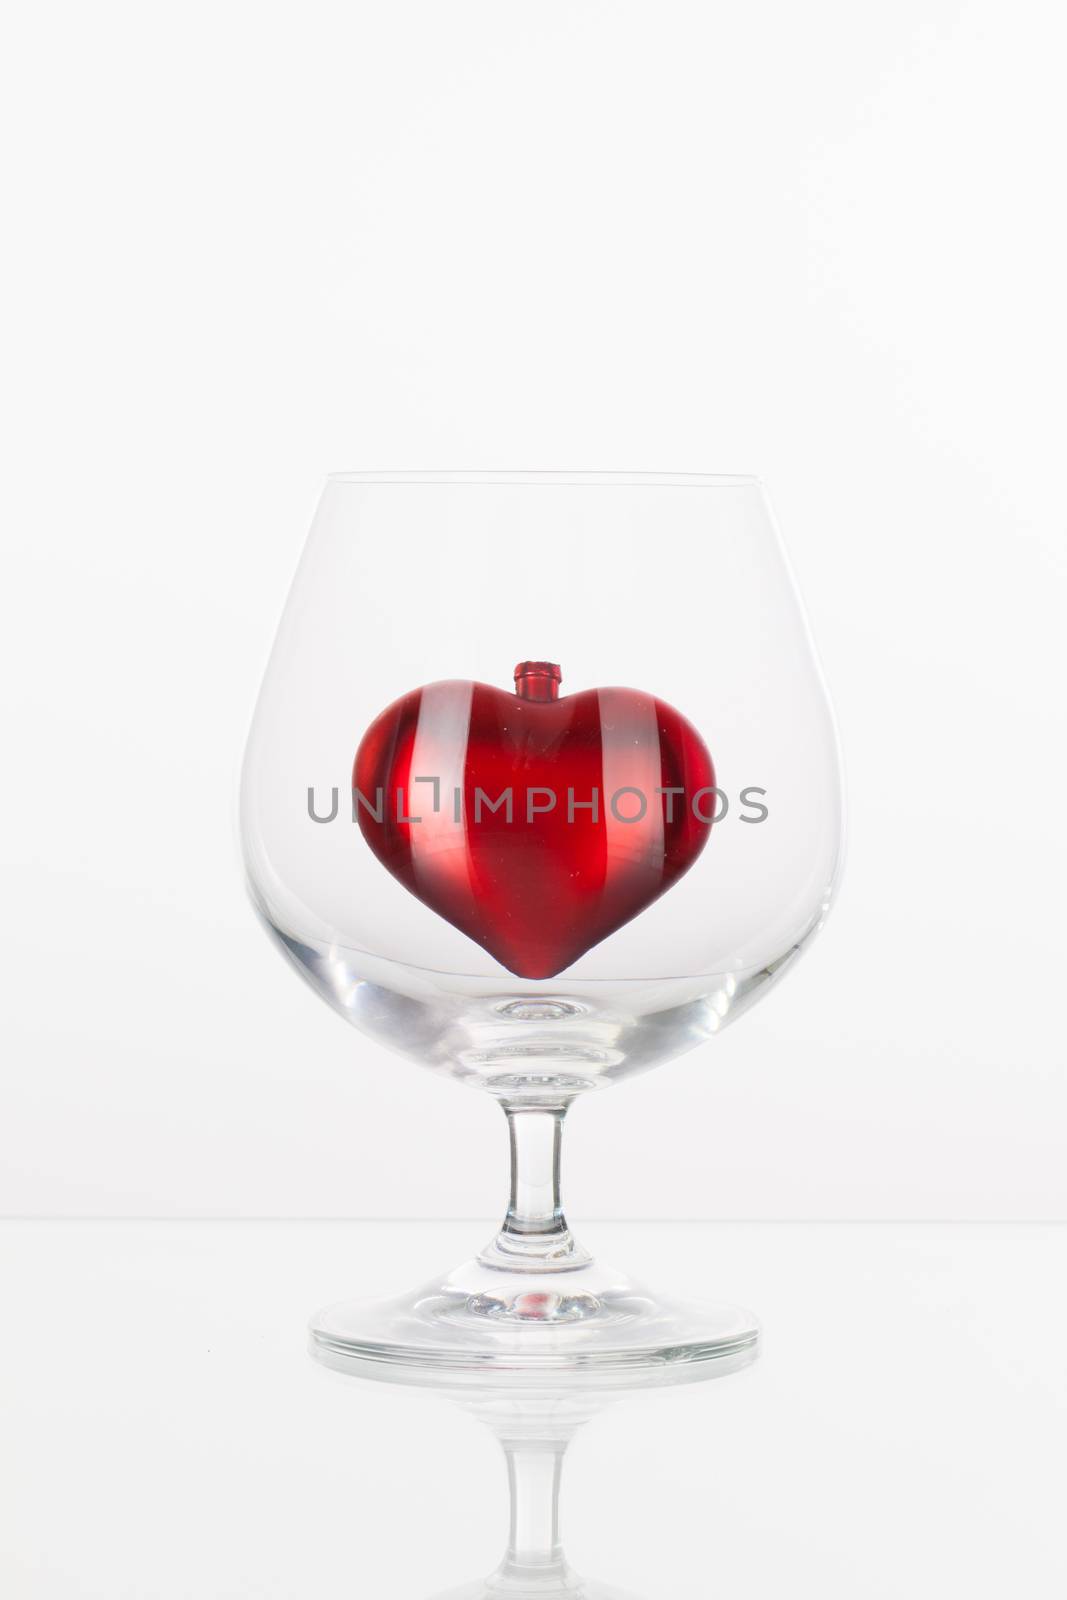 Red heart inside a glass of cognac  by CaptureLight